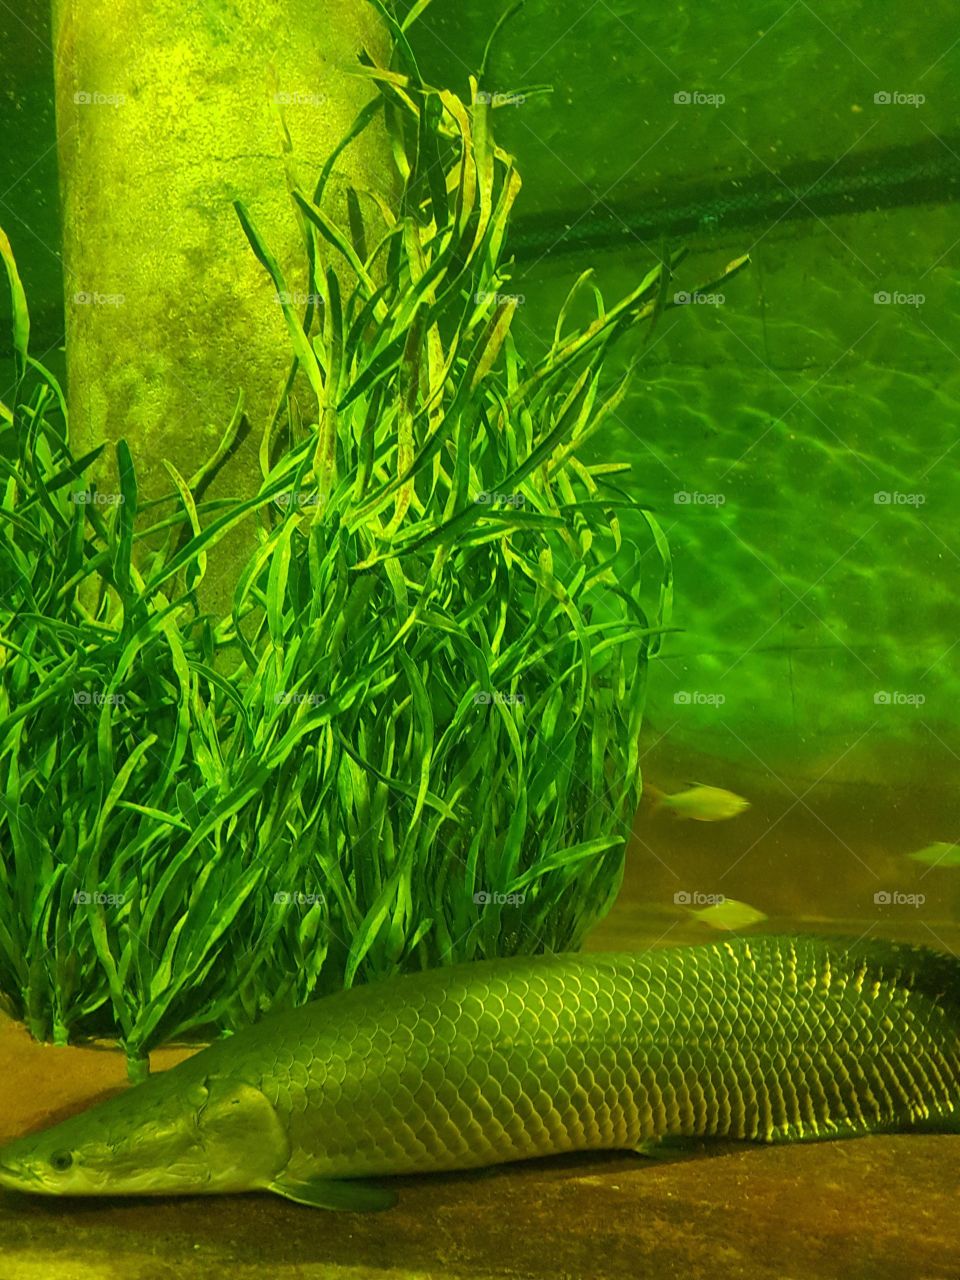 amazon fish